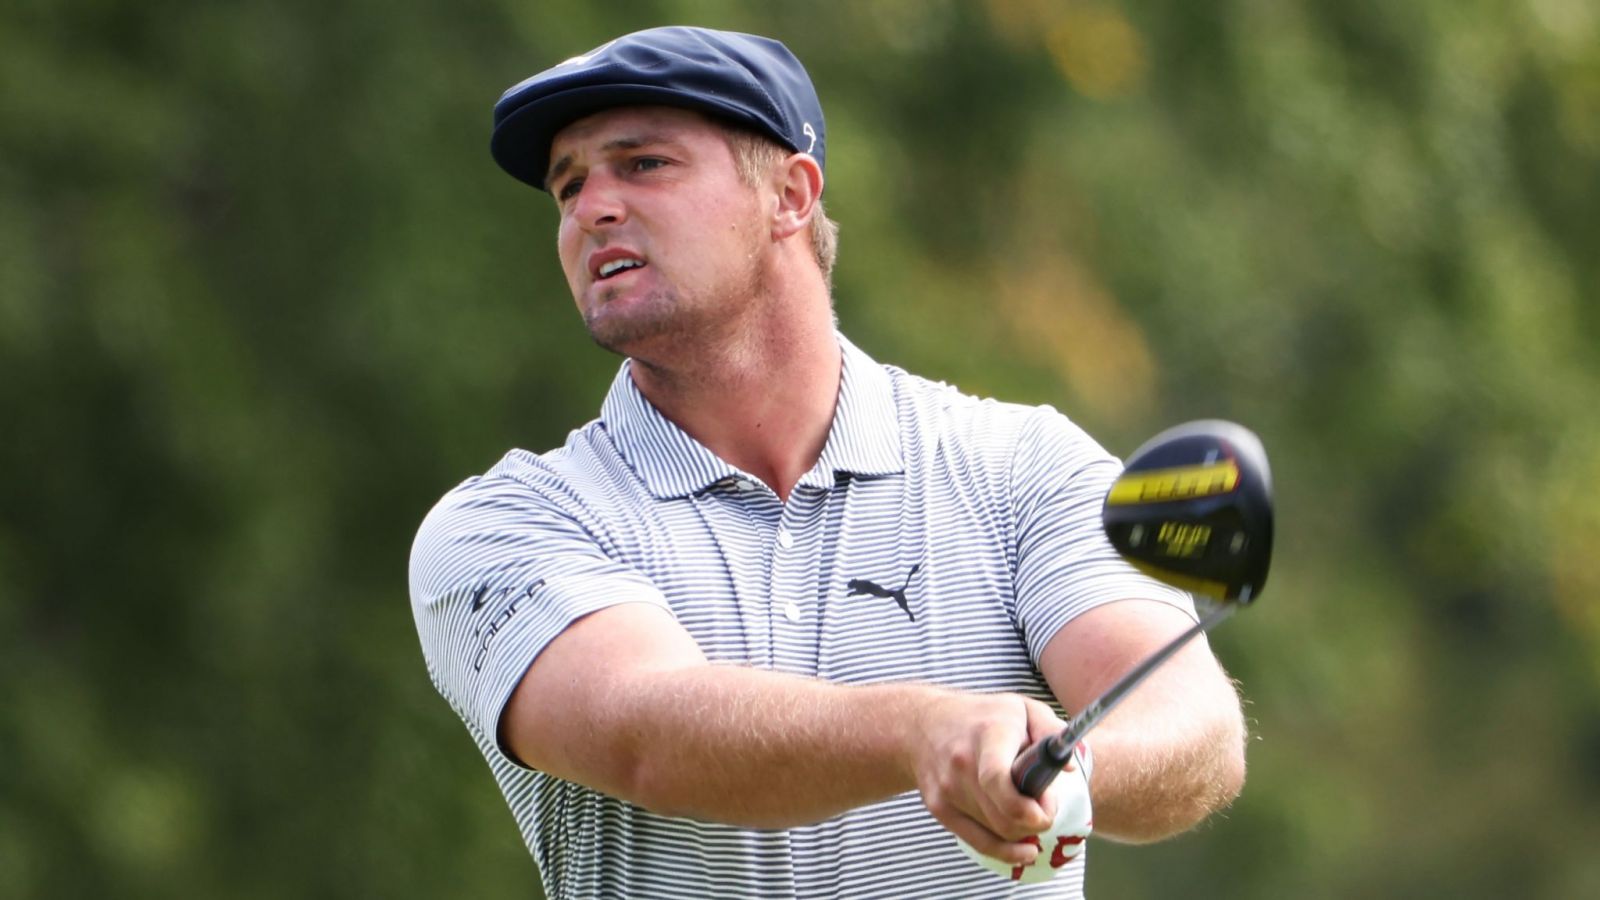 PGA Tour vừa ra quyết định hạn chế lối đi tắt của Bryson DeChambeau tại TPC Sawgrass